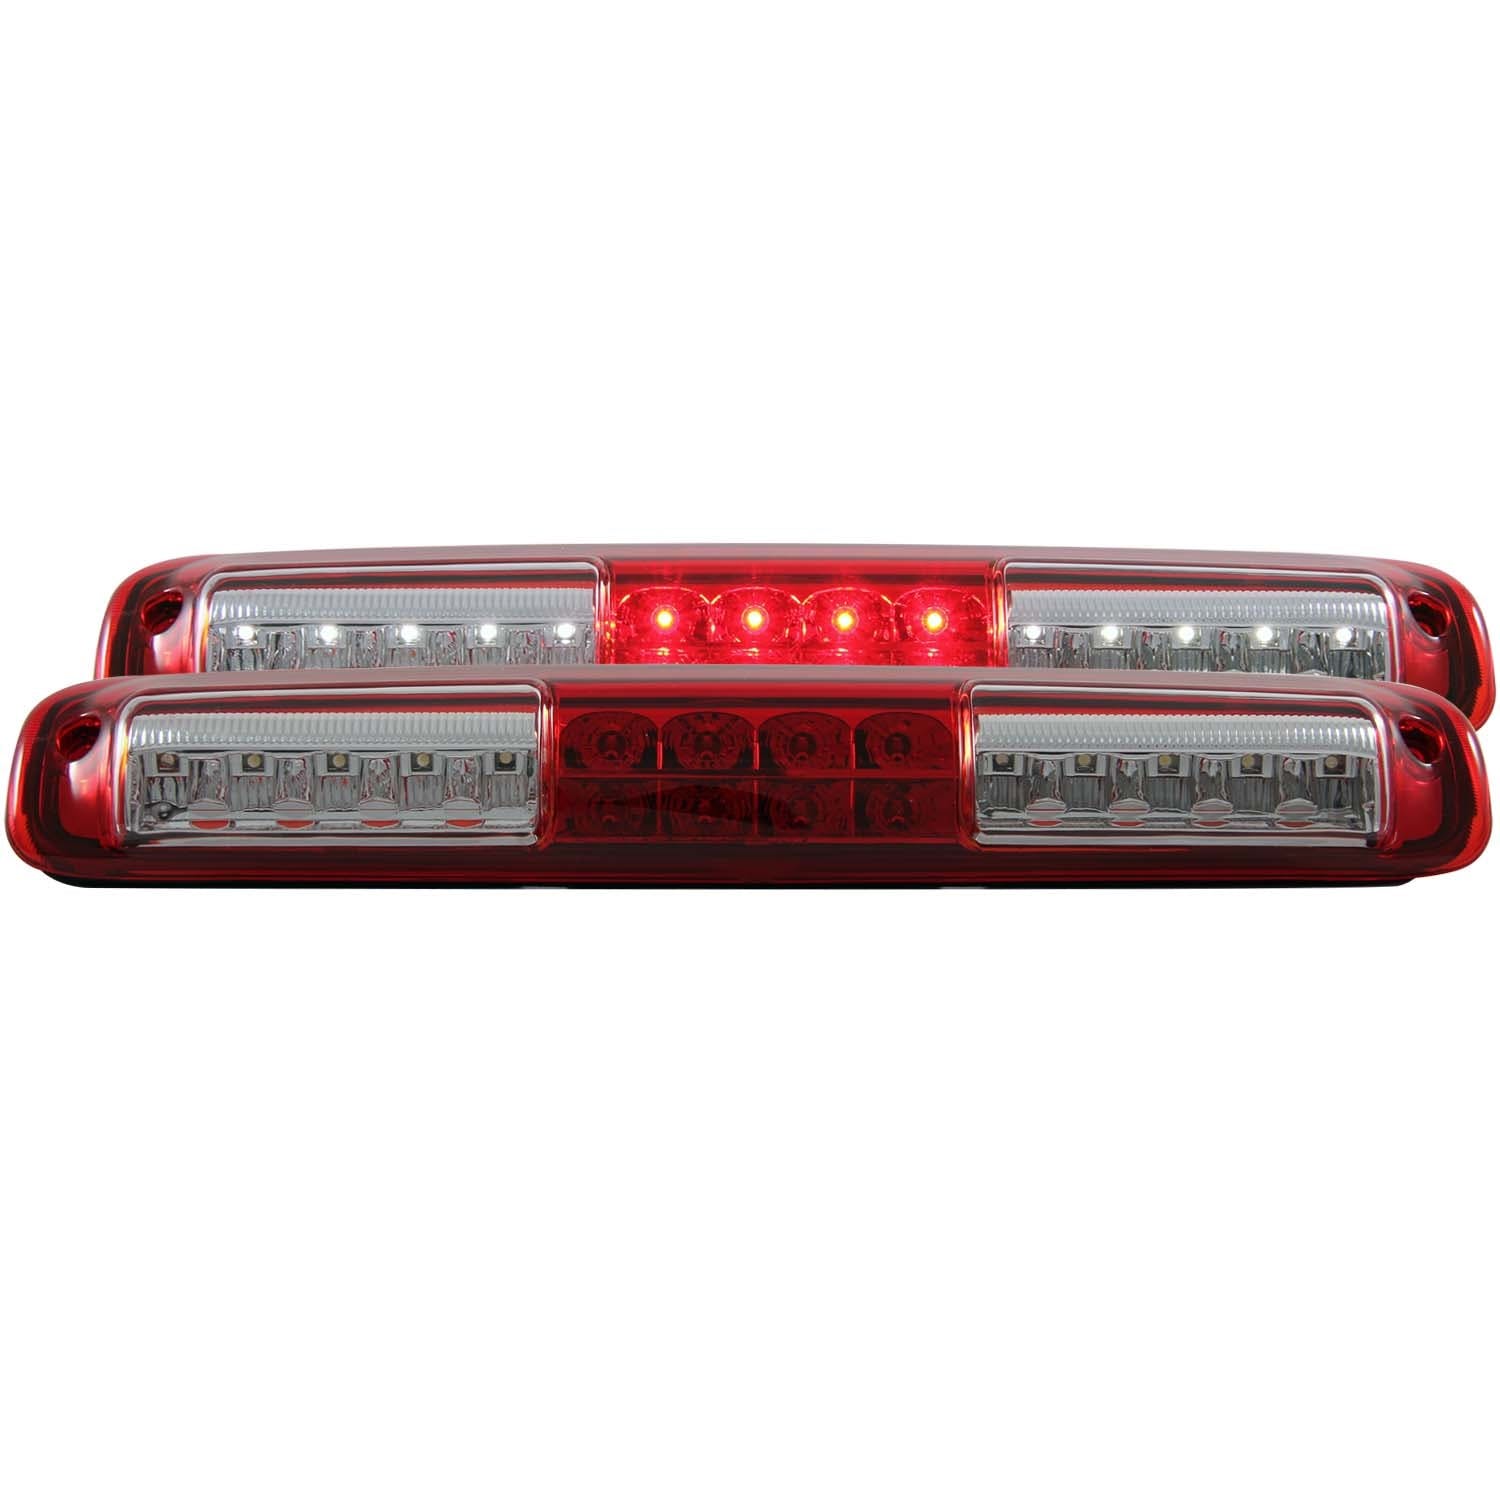 AnzoUSA 531029 LED 3rd Brake Light Red